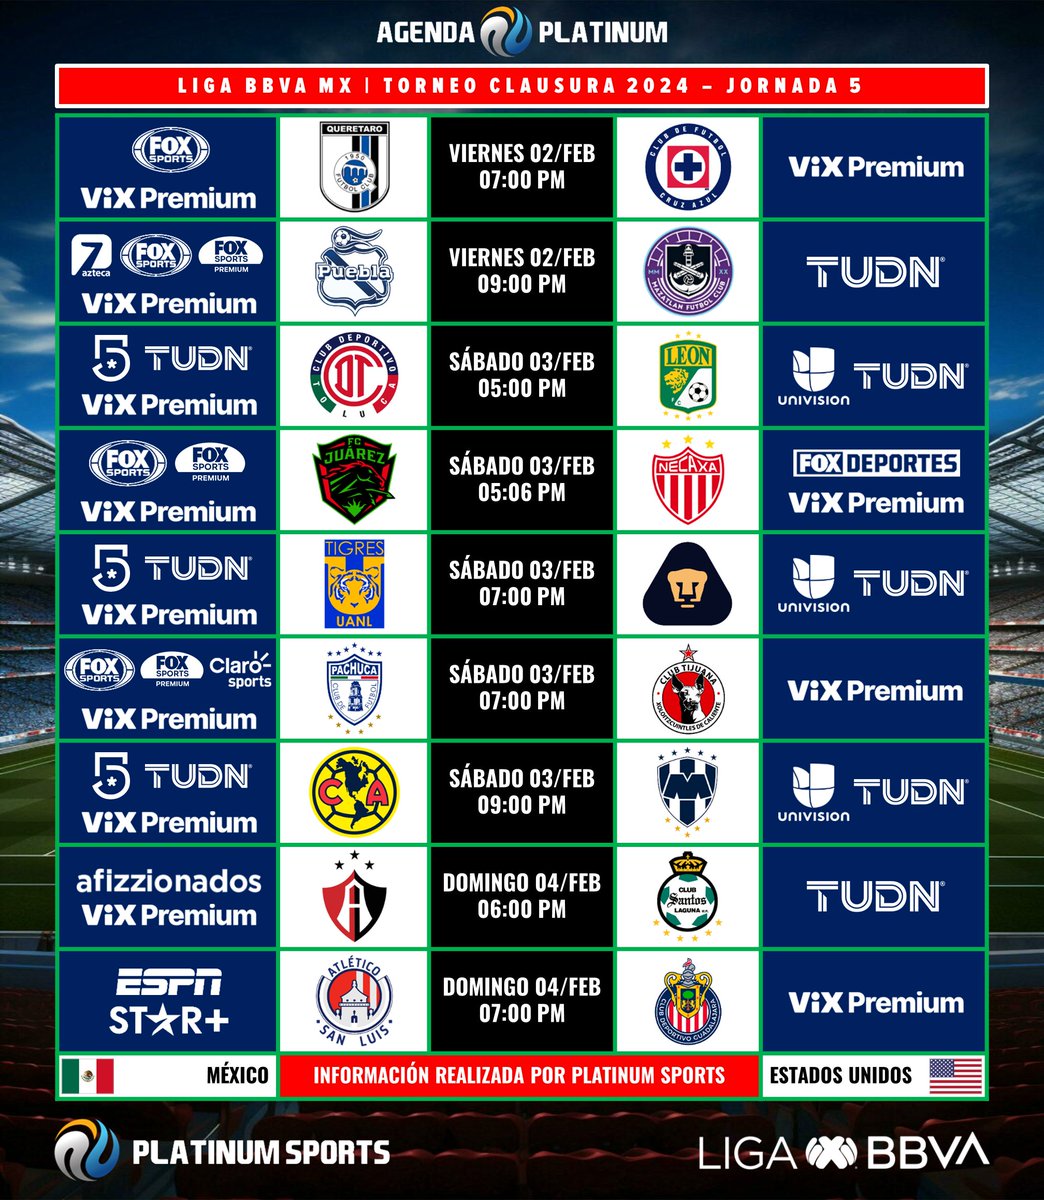 ⚽️ #AgendaPLATINUM 
🇲🇽 #LigaBBVAMX Clausura 2024 - Jornada 5

⏰📺 Horarios y transmisiones para México y Estados Unidos.
⚠️ Sujeto a cambios. 

#Clausura2024 - #Jornada5